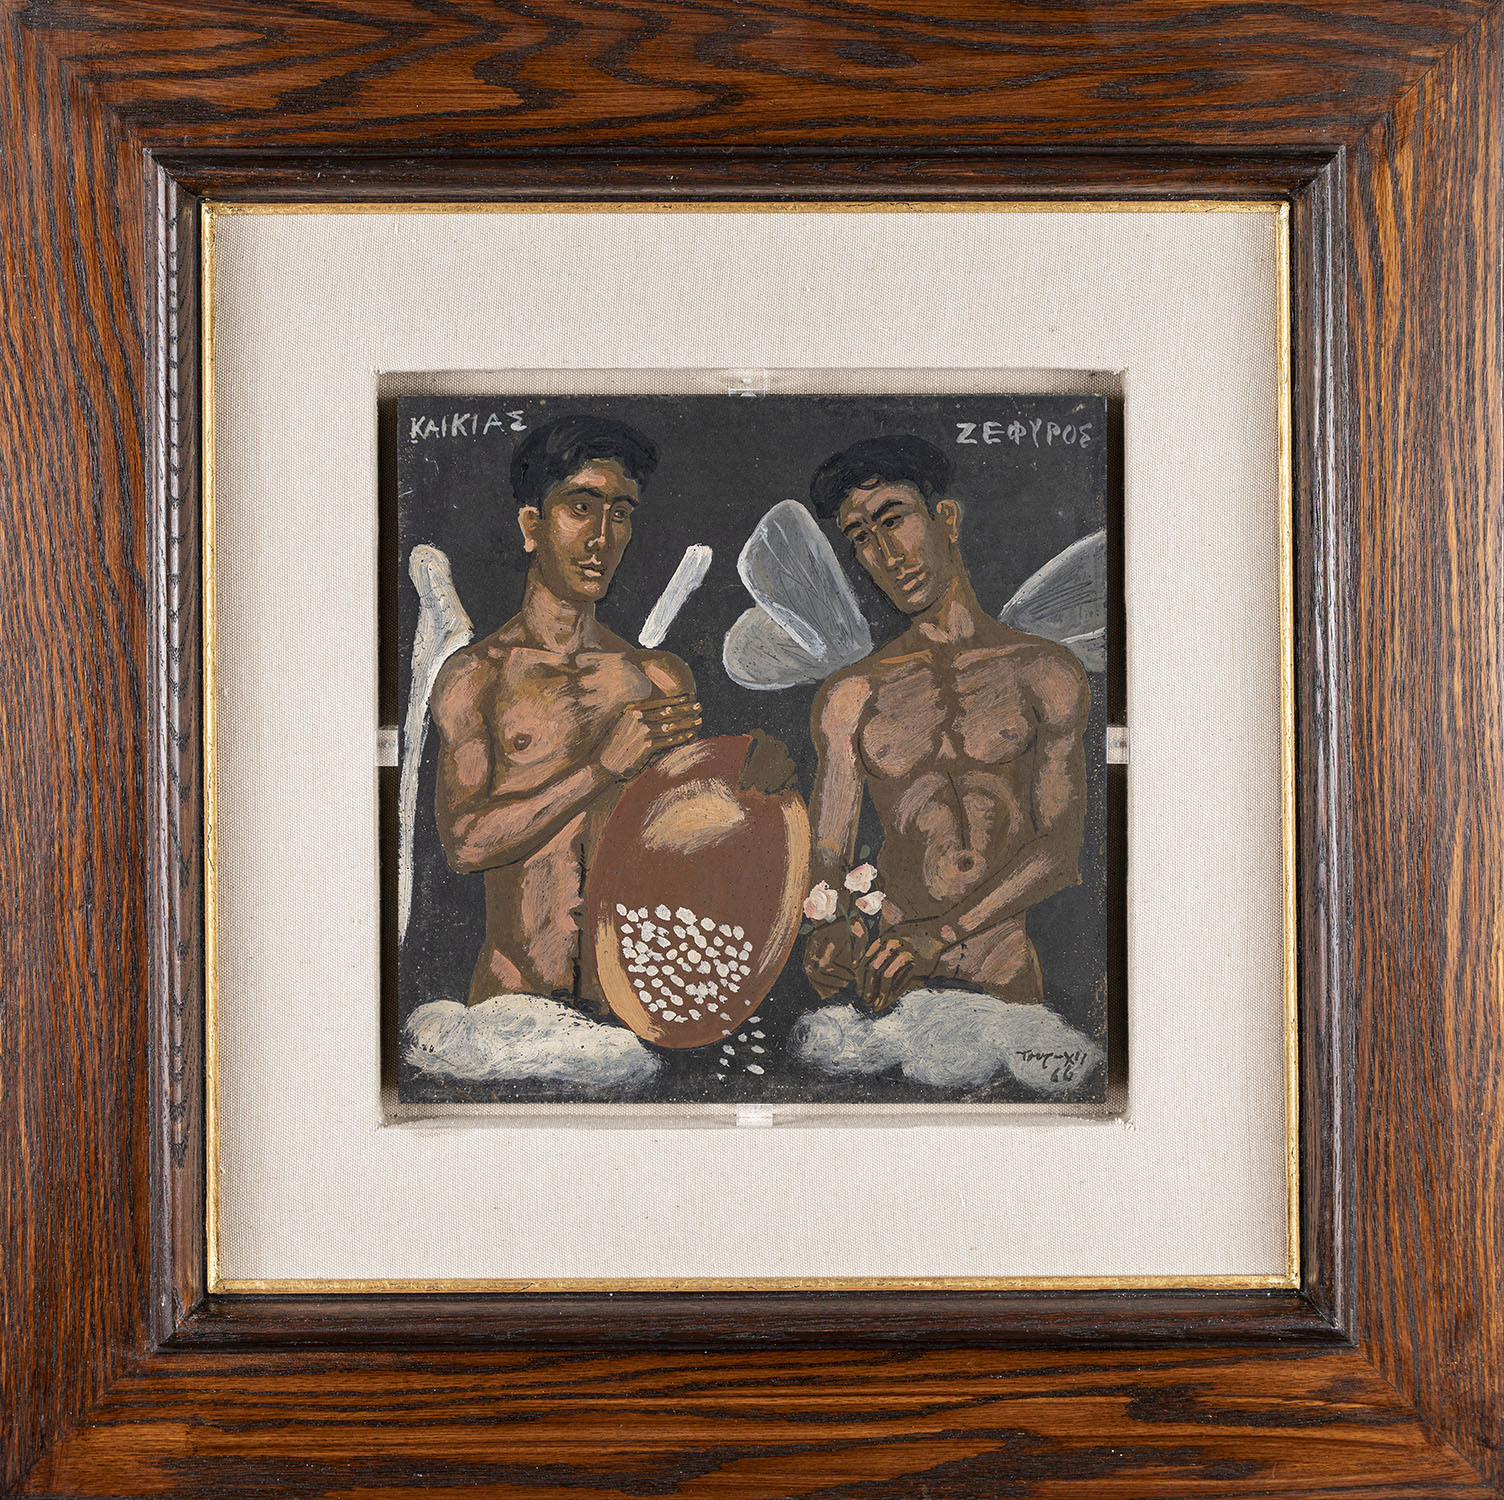 «Καικίας και Ζέφυρος», Πίνακας του Τσαρούχη